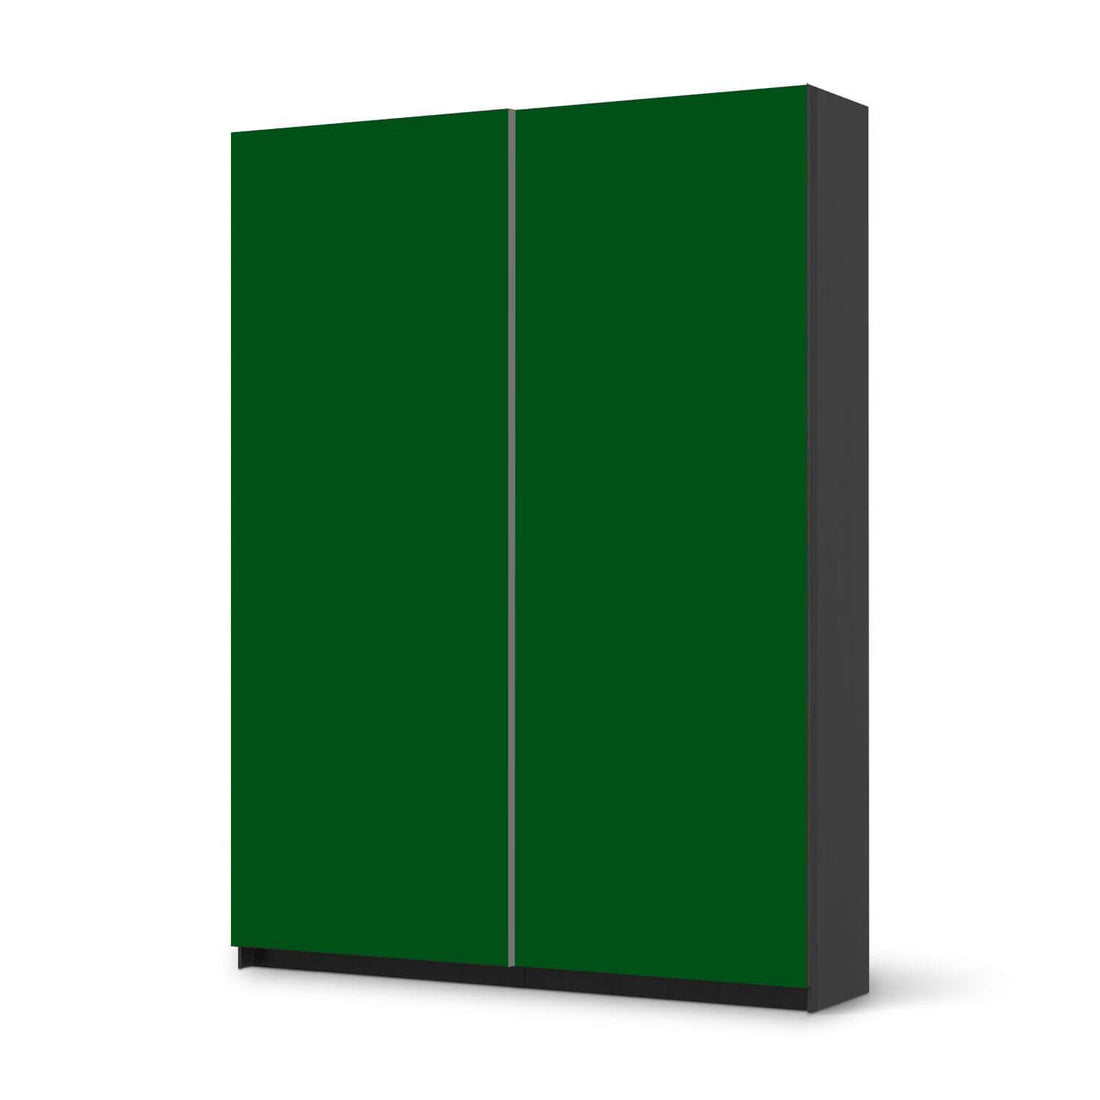 Möbel Klebefolie Grün Dark - IKEA Pax Schrank 201 cm Höhe - Schiebetür 75 cm - schwarz